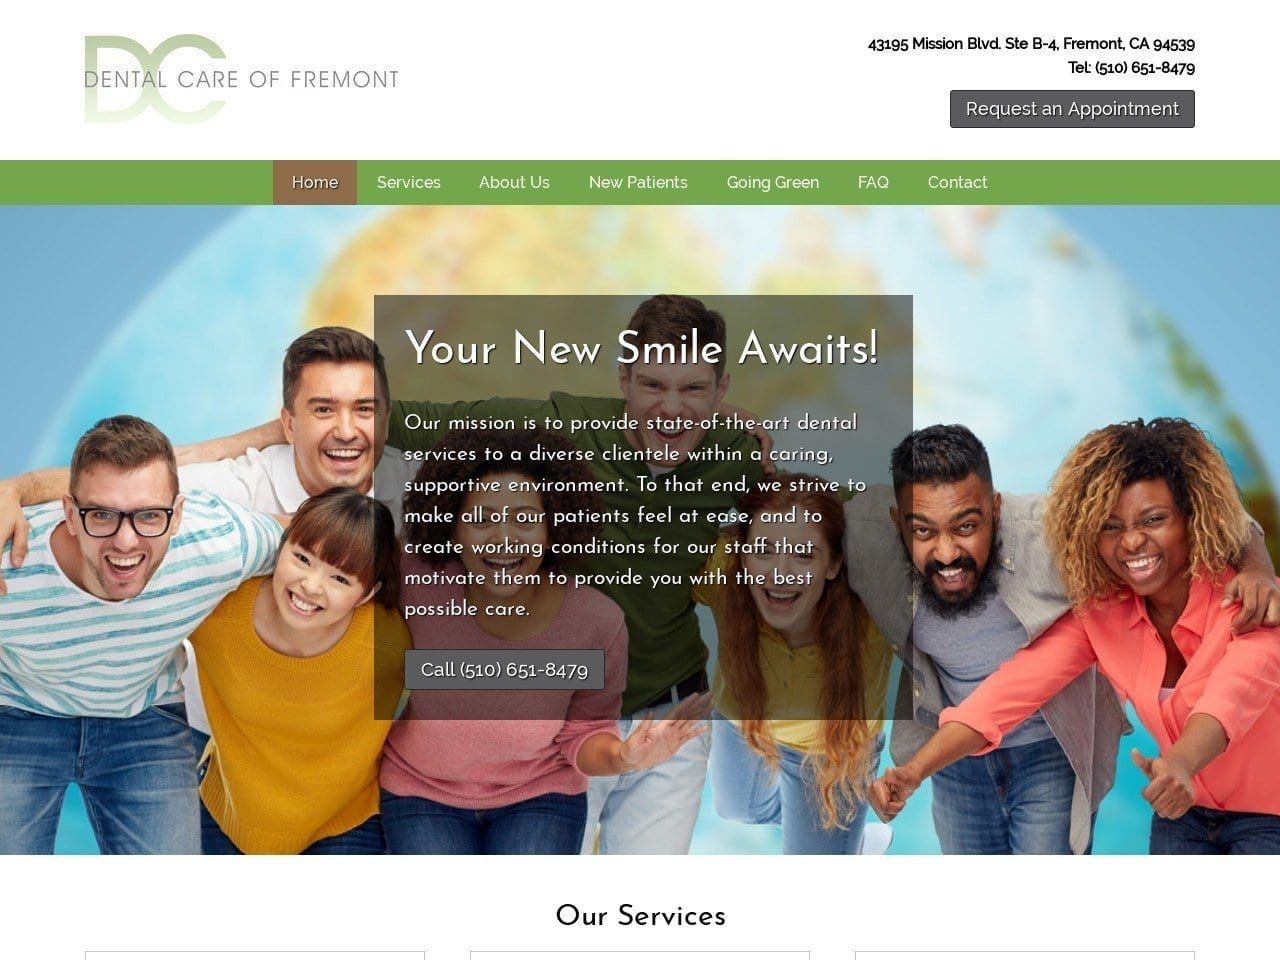 Dental Care Of Fremont Website Screenshot from dentalcarefremont.com